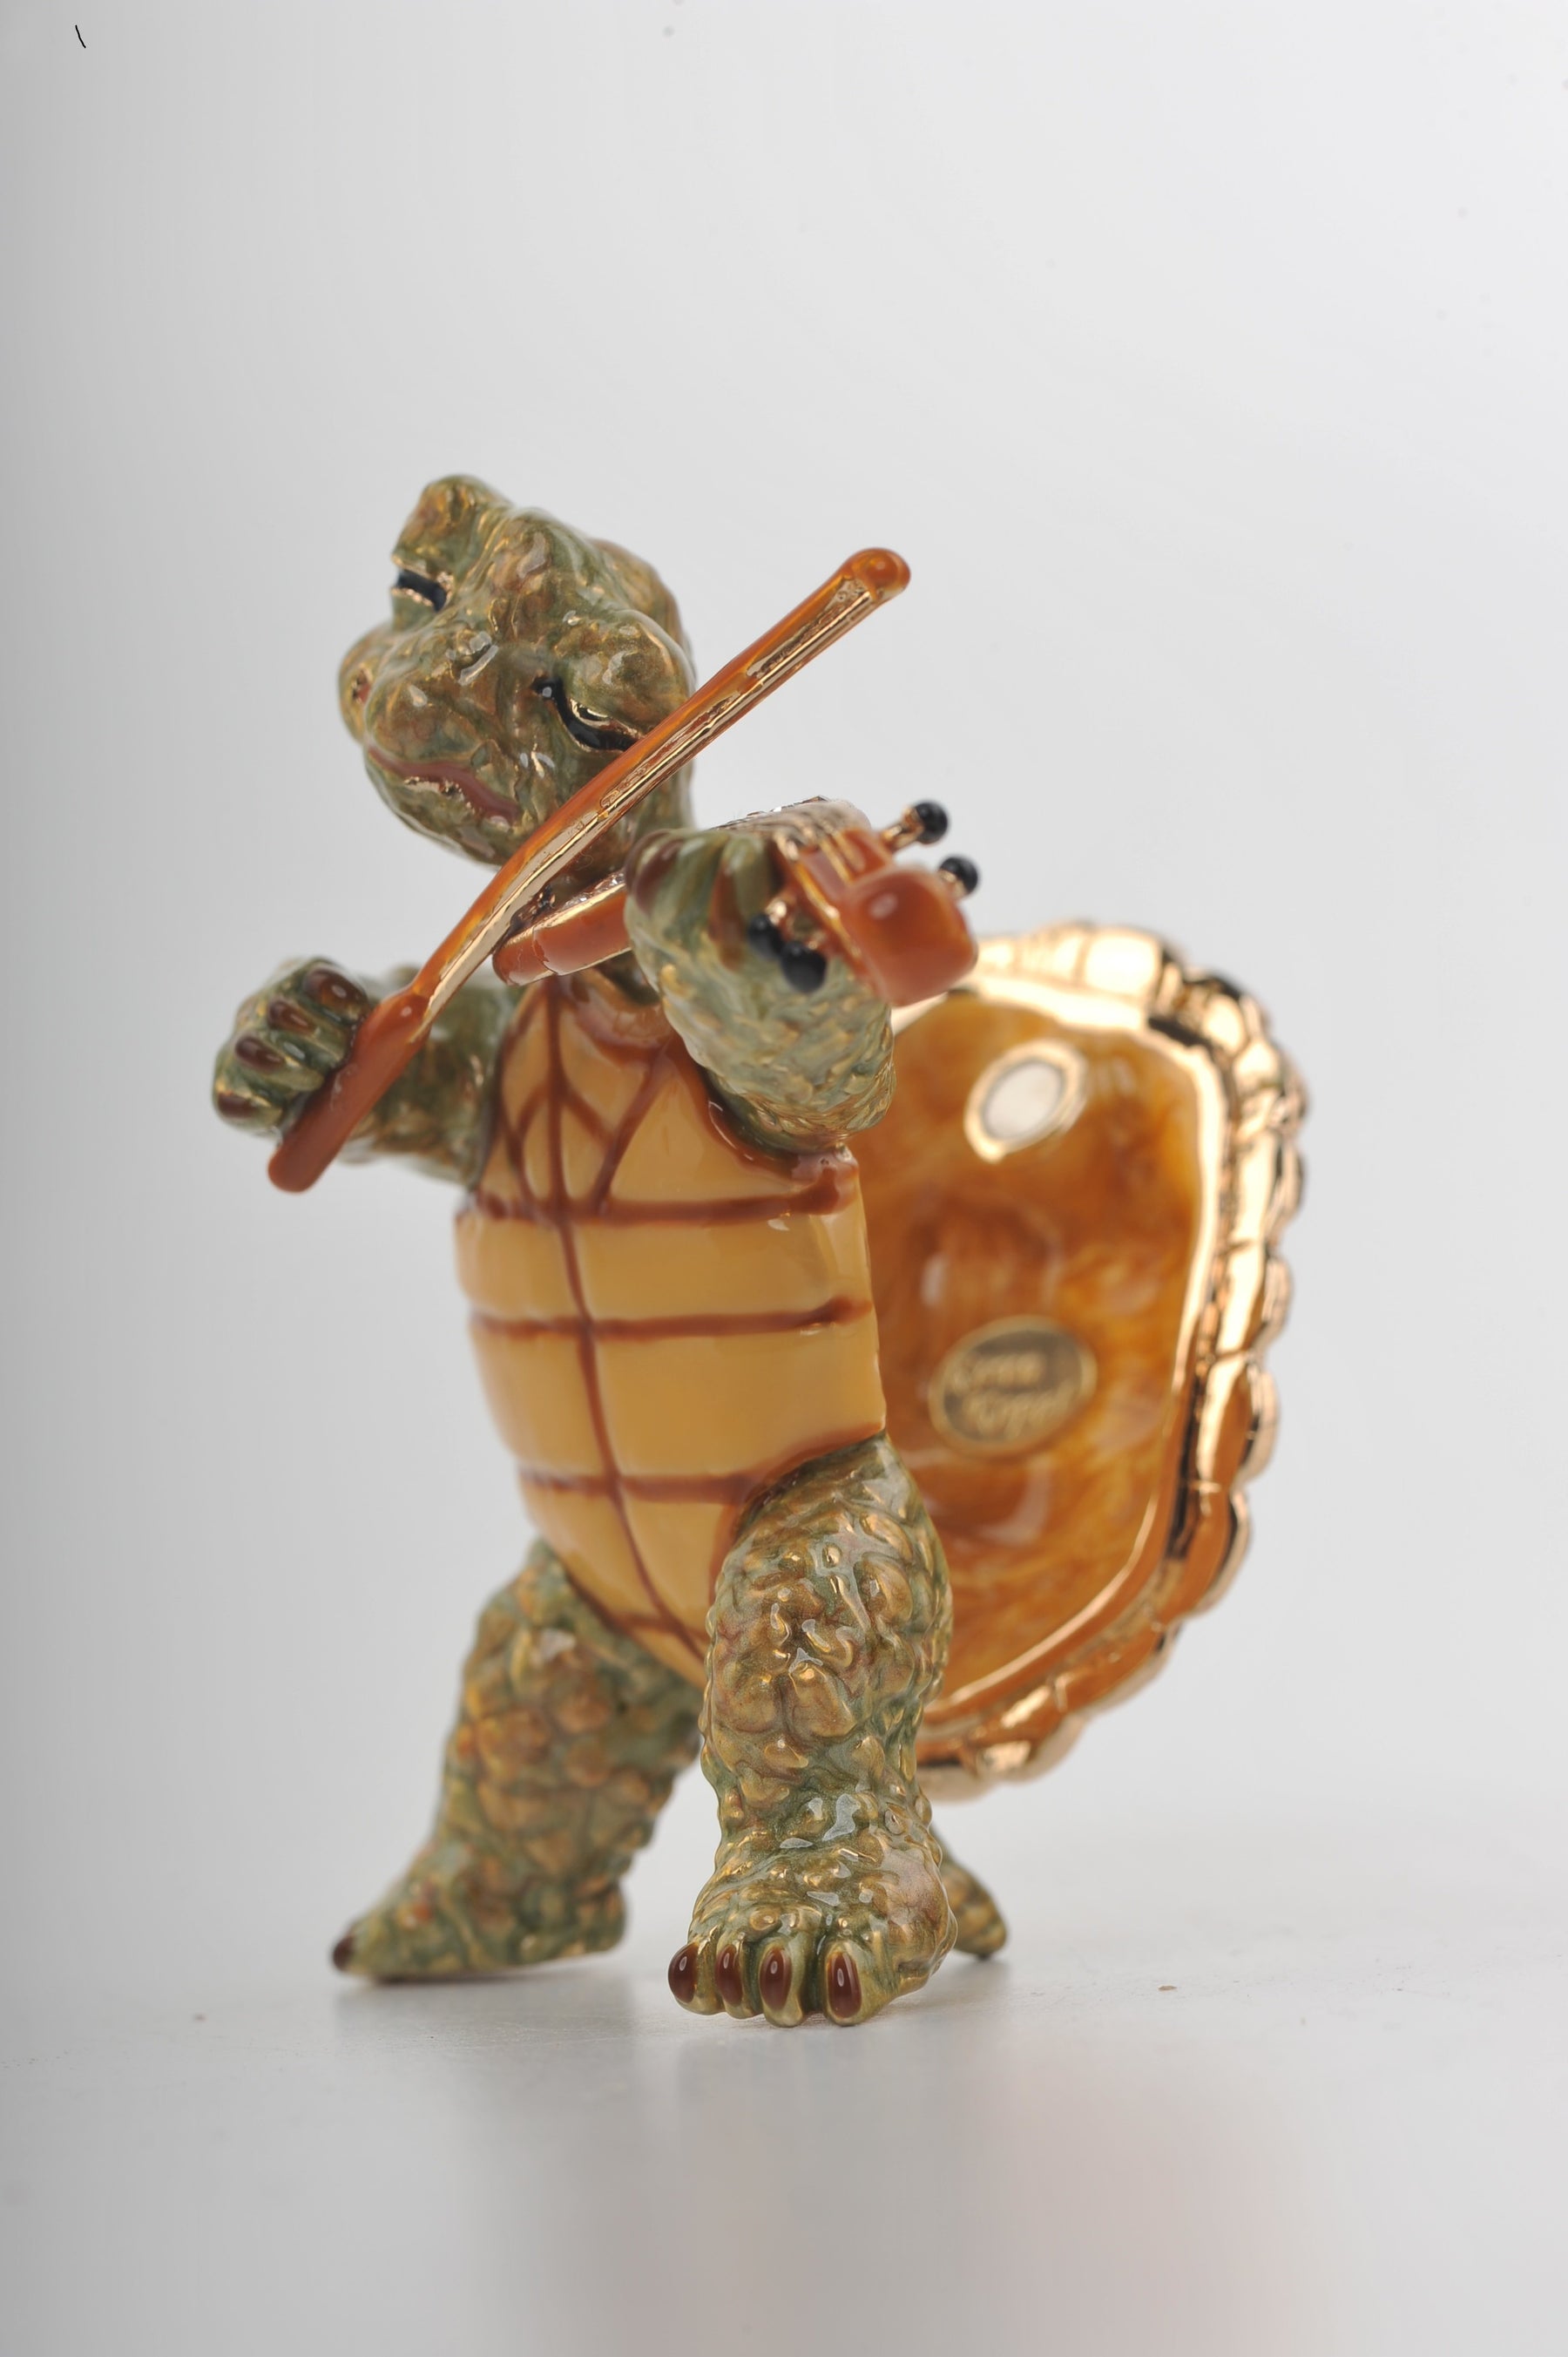 Keren Kopal Turtle Playing the Violin  78.75